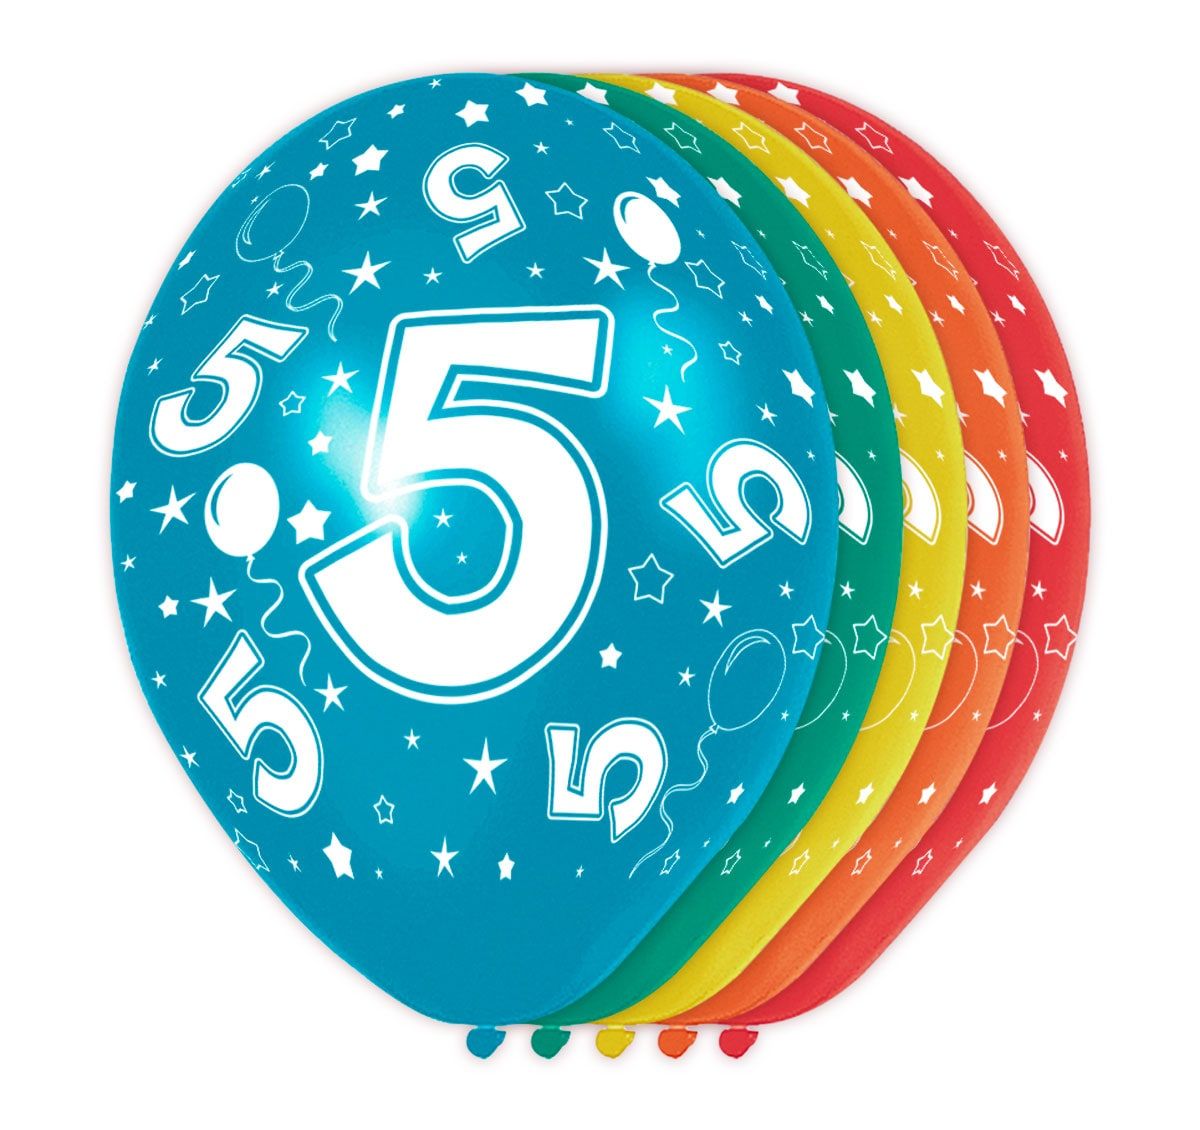 5 verjaardag ballonnen 5 jaar meerkleurig